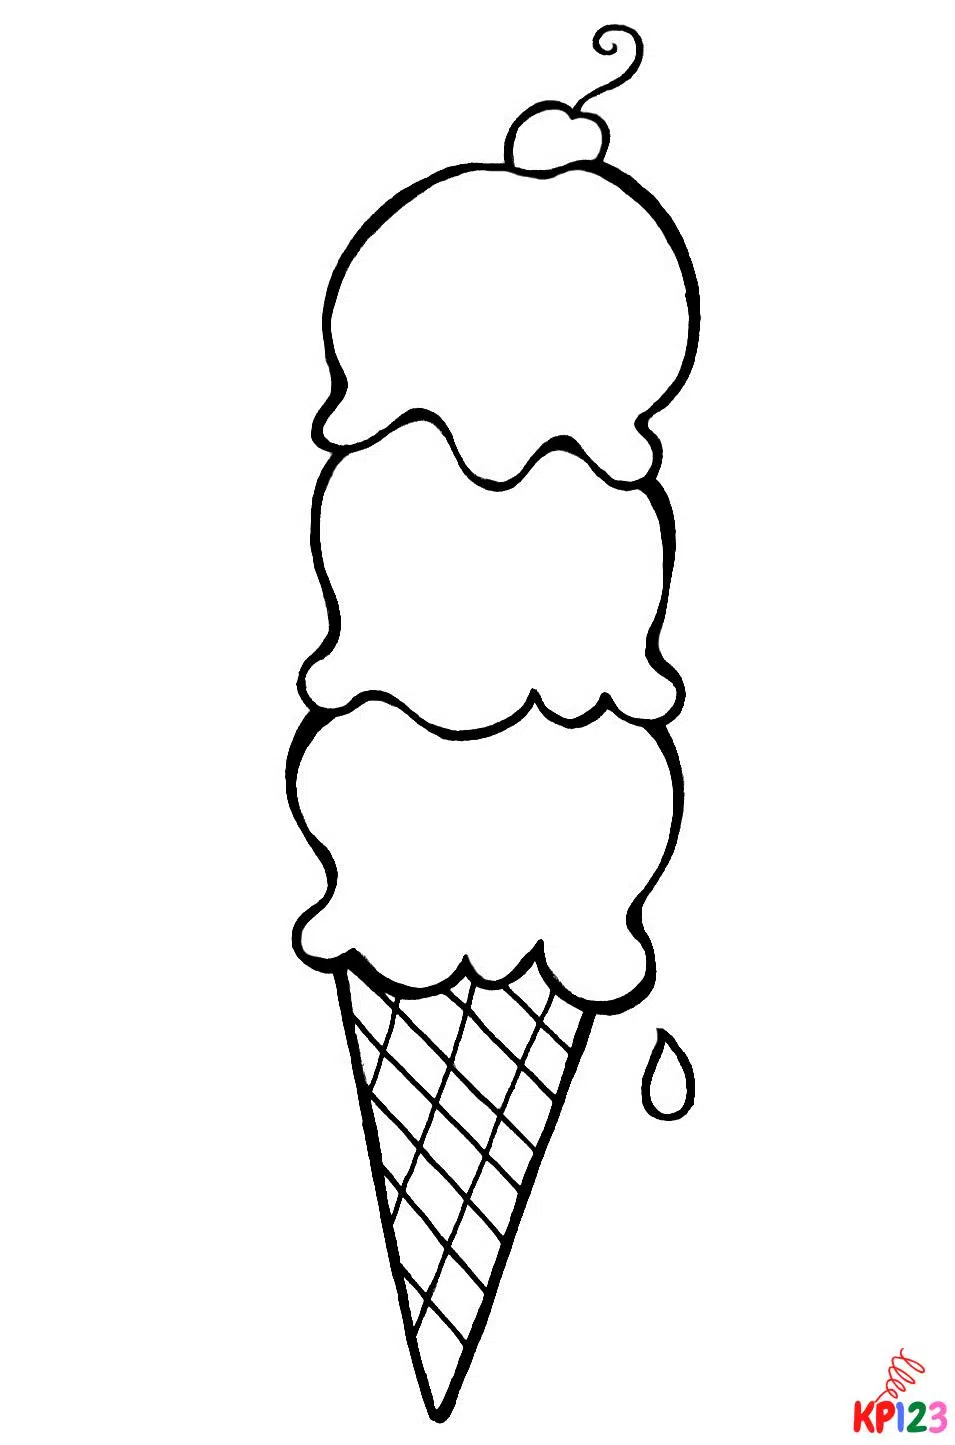 ijsjes5